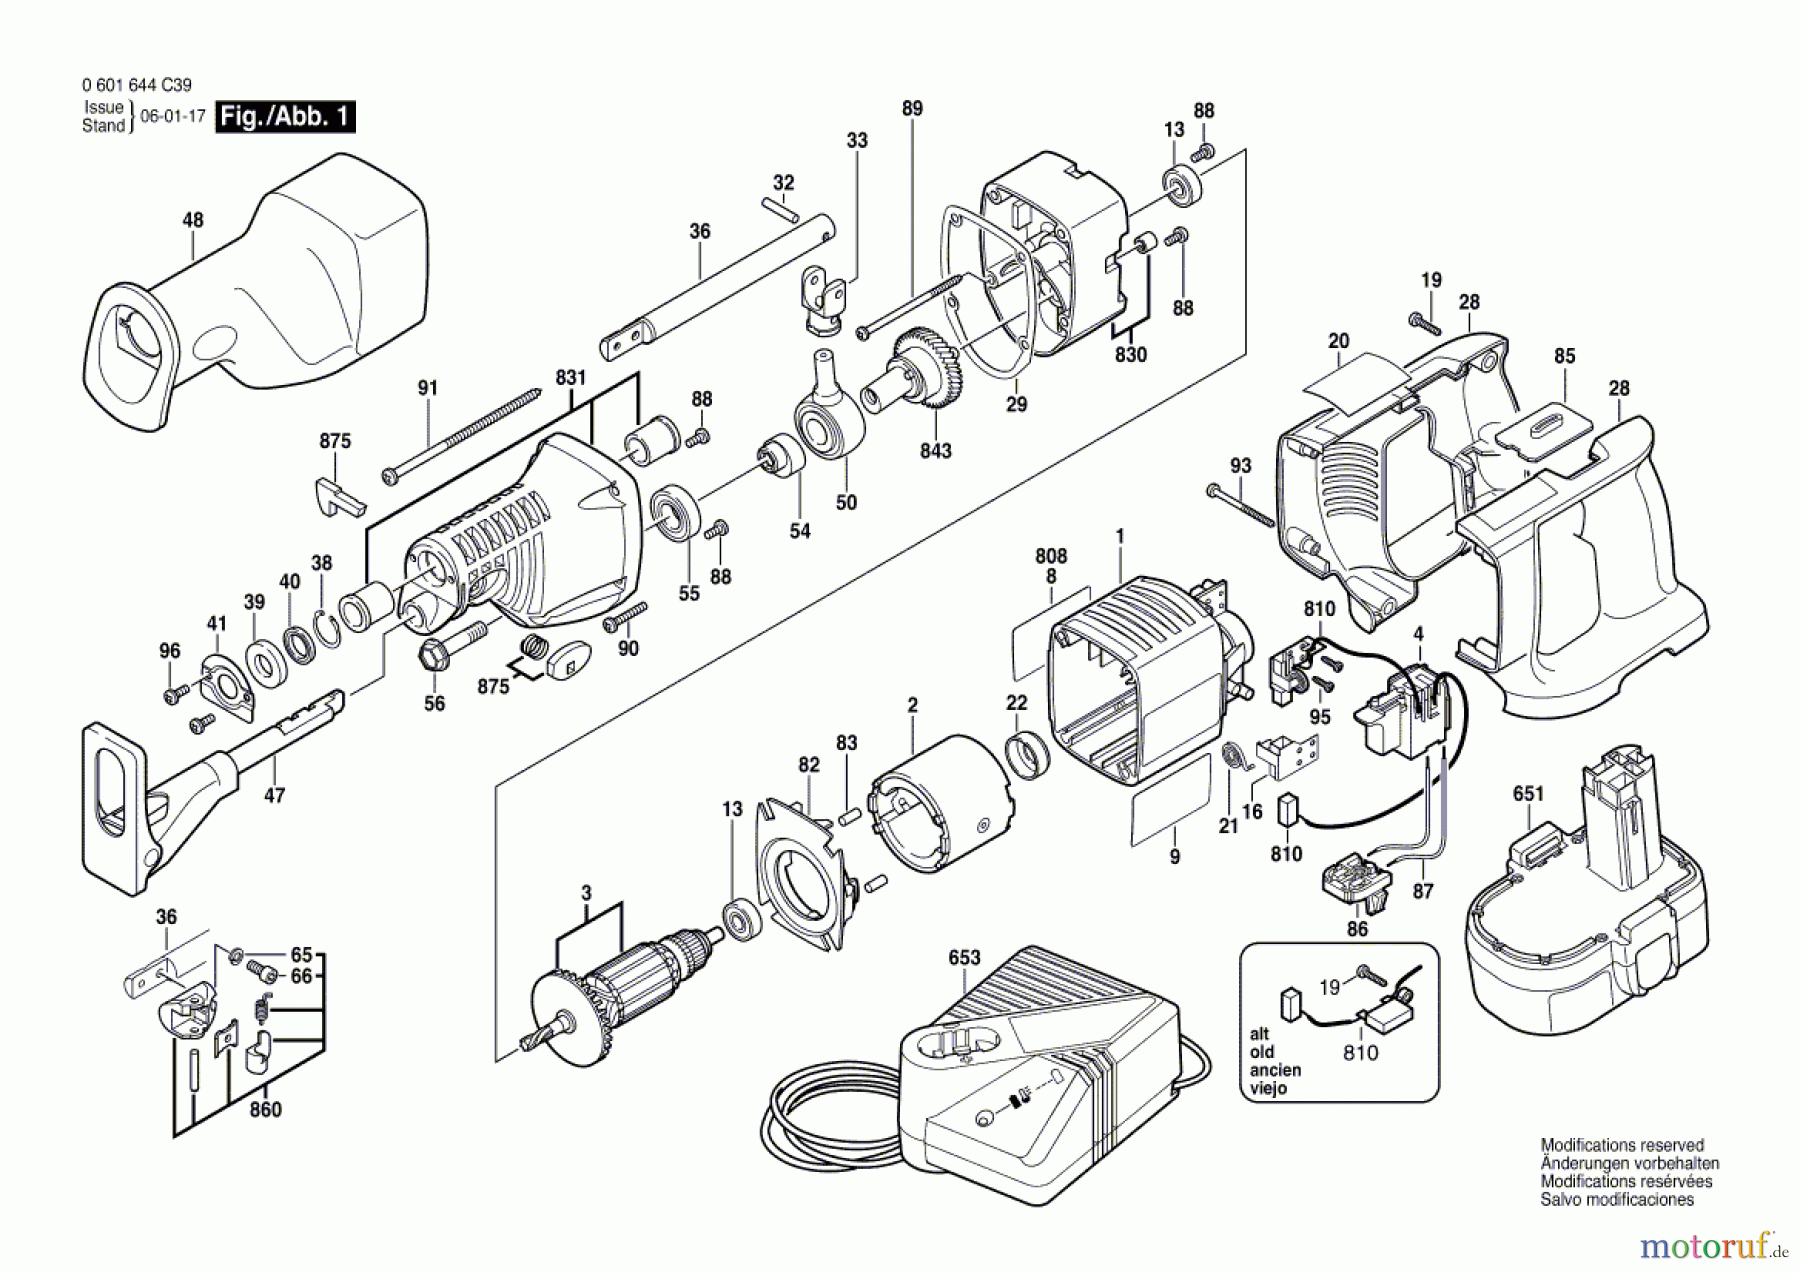  Bosch Werkzeug Säbelsäge GSA 18 VE Seite 1